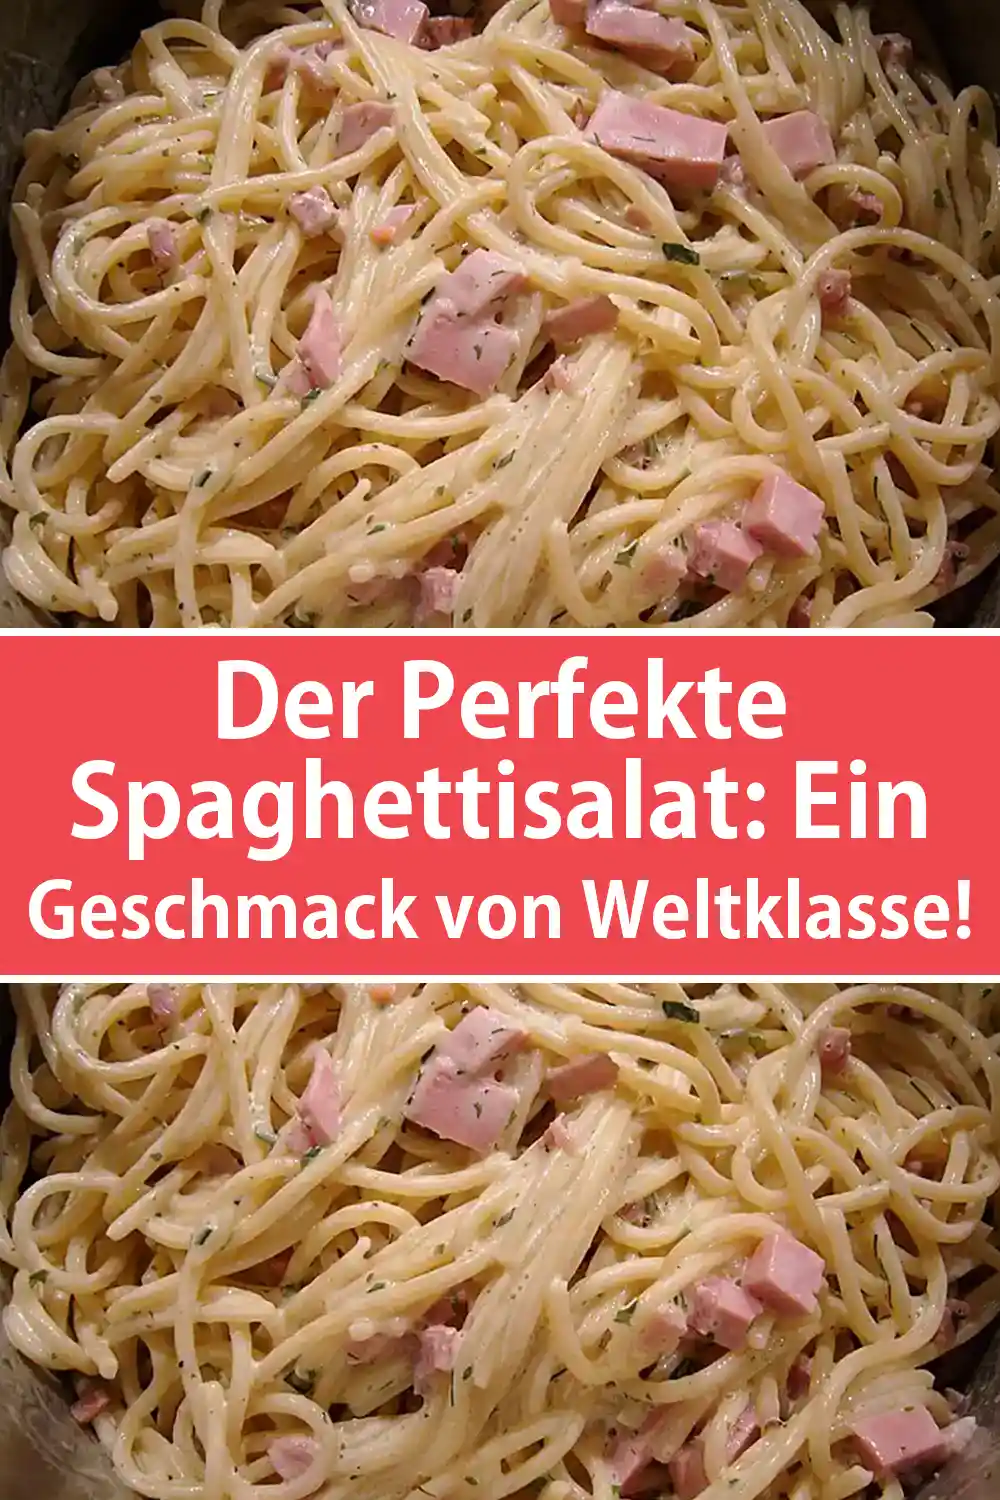 Der Perfekte Spaghettisalat: Ein Geschmack von Weltklasse!